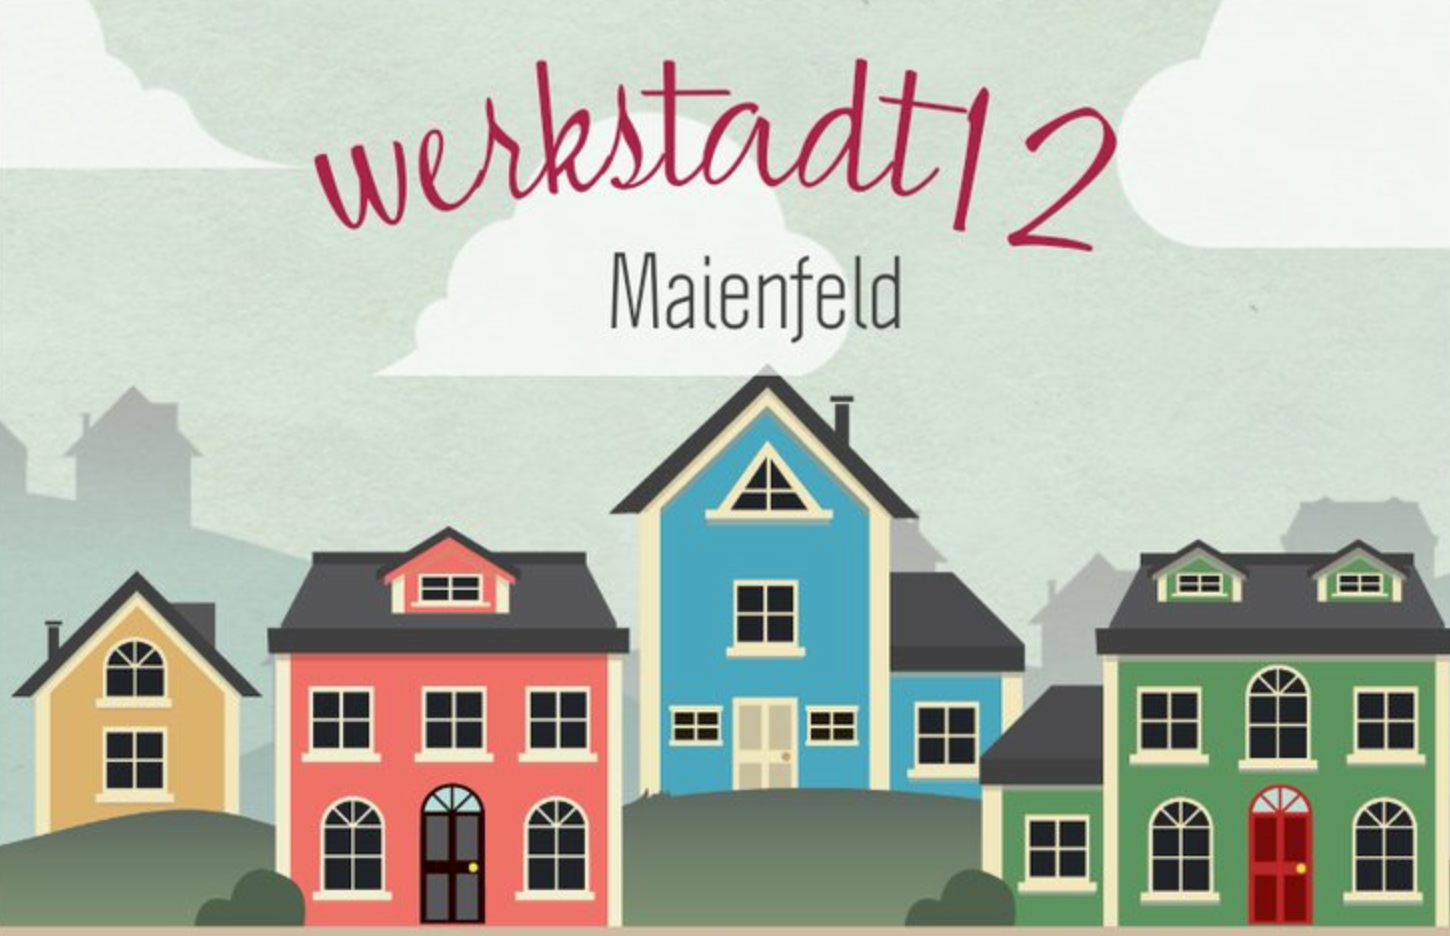 werkstadt12 Maienfeld